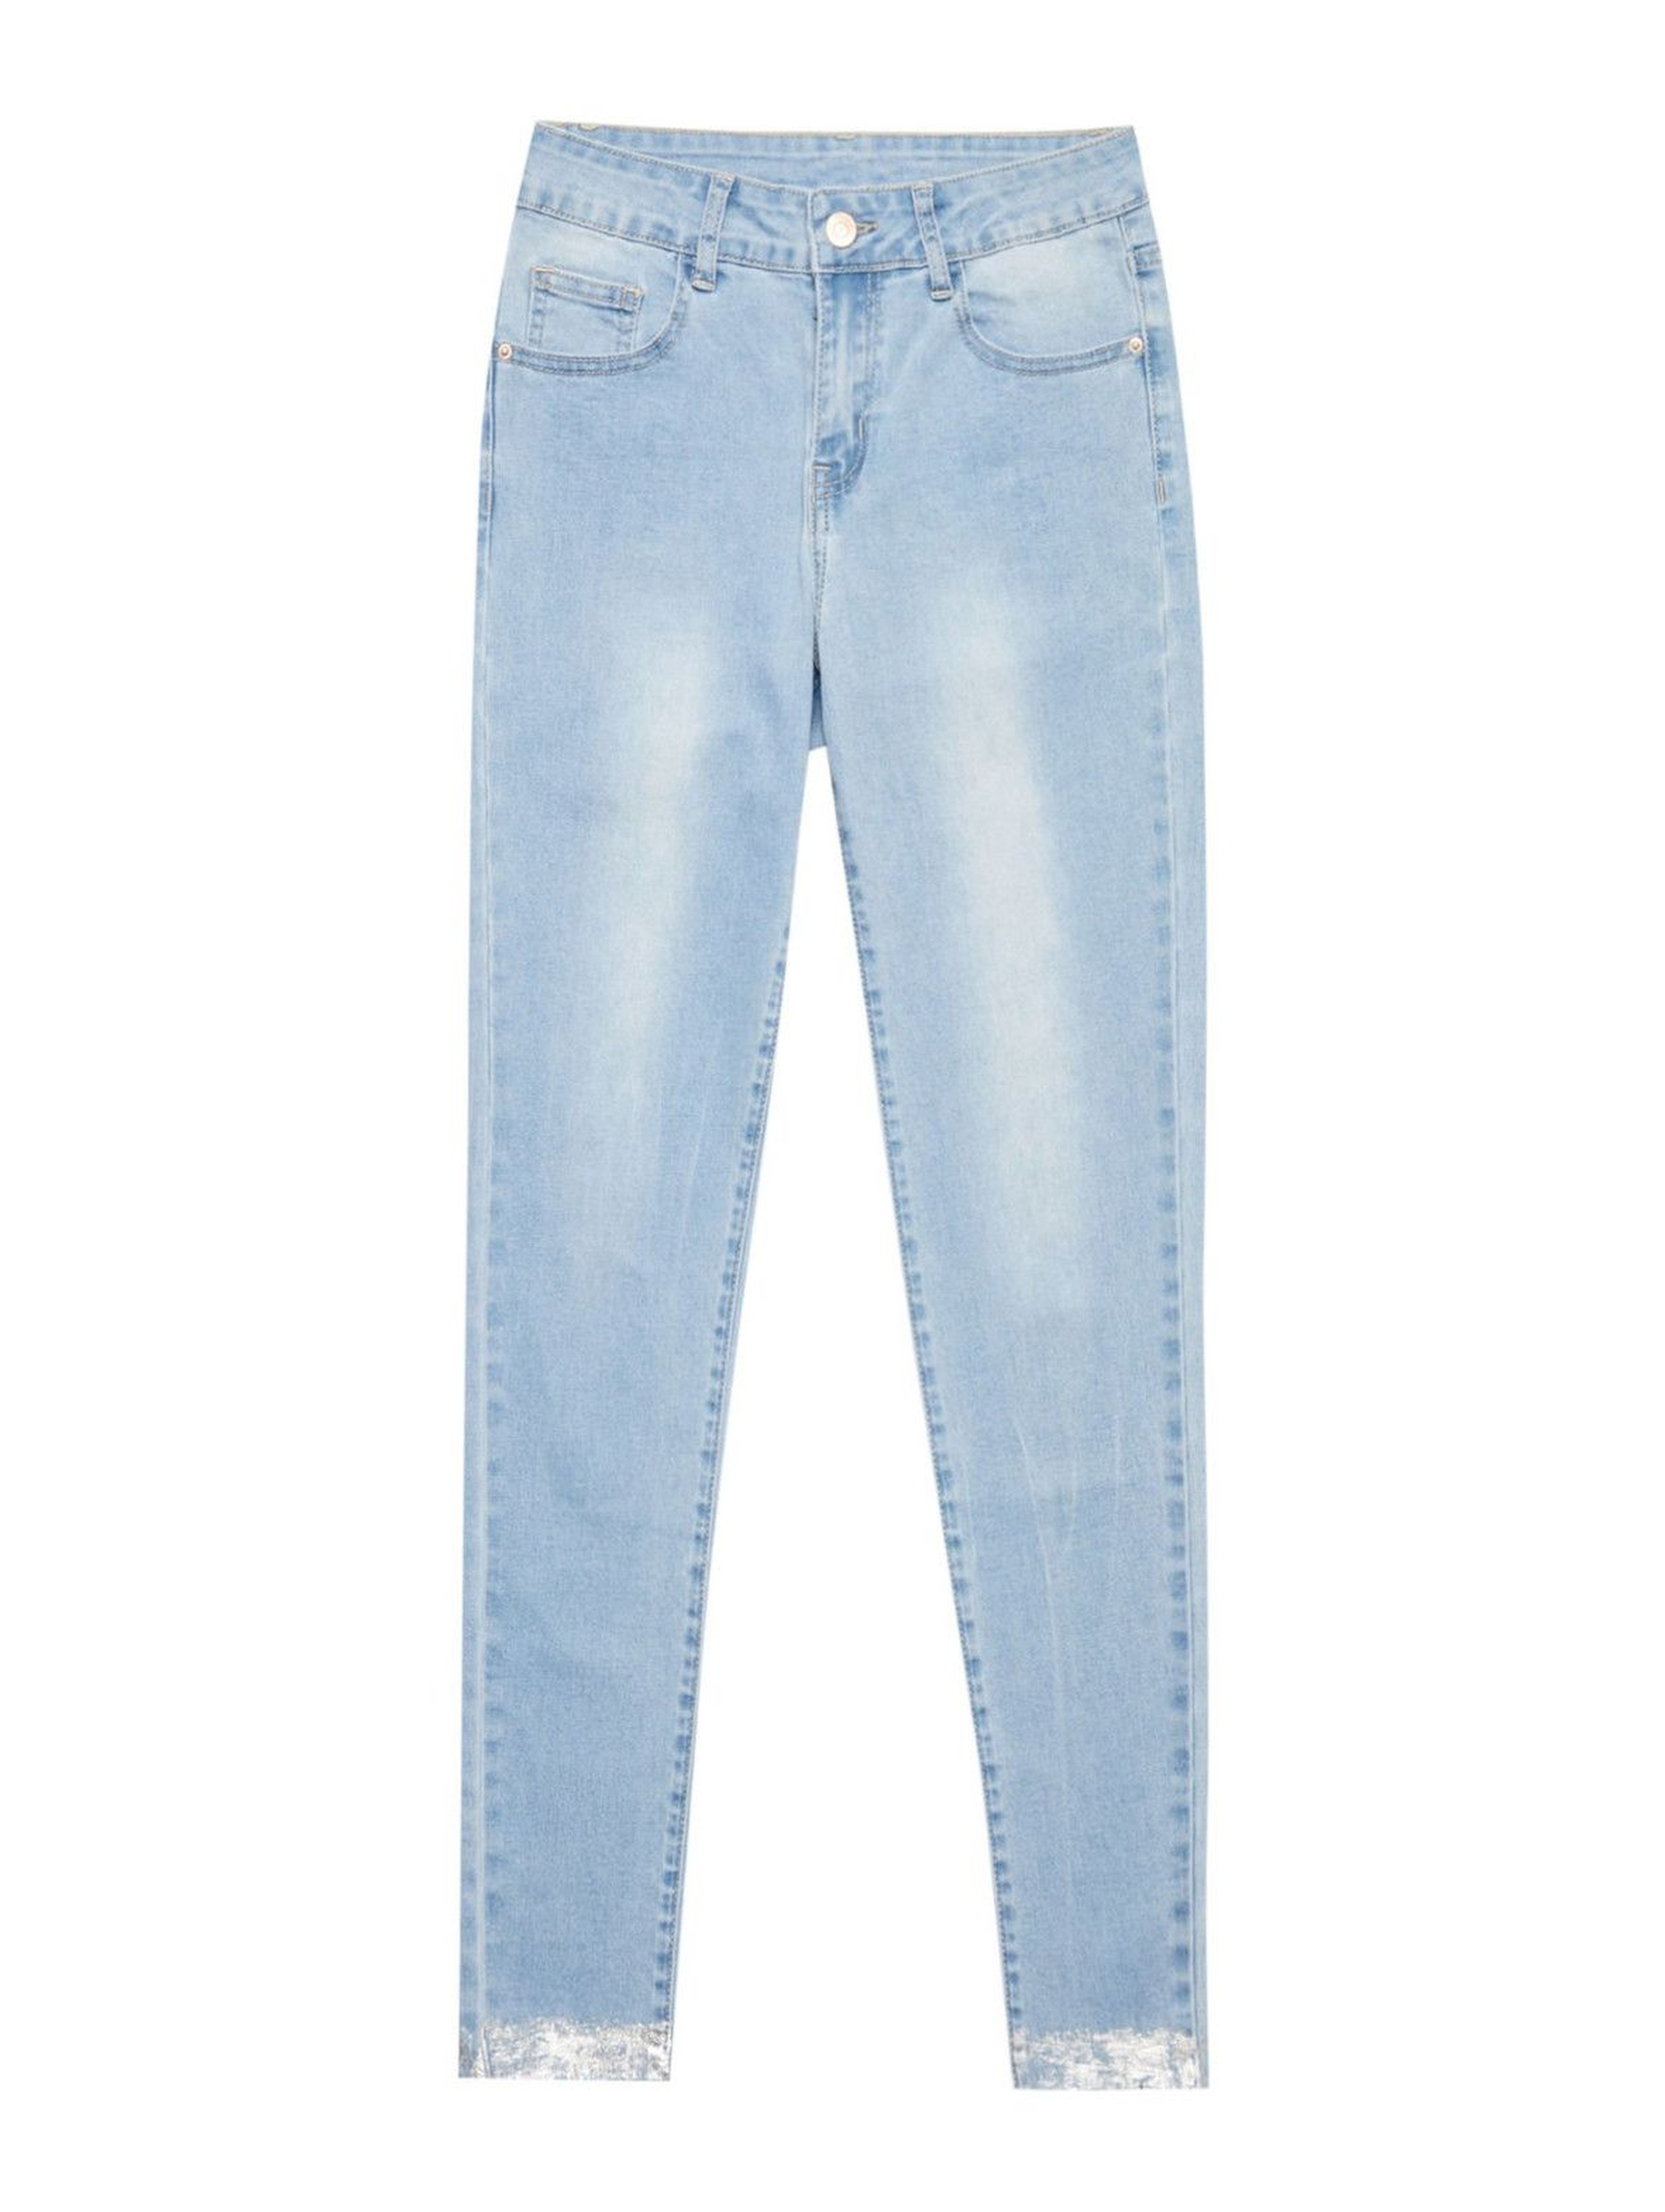 Jeansy damskie z metalicznym zdobieniem - niebieskie slim